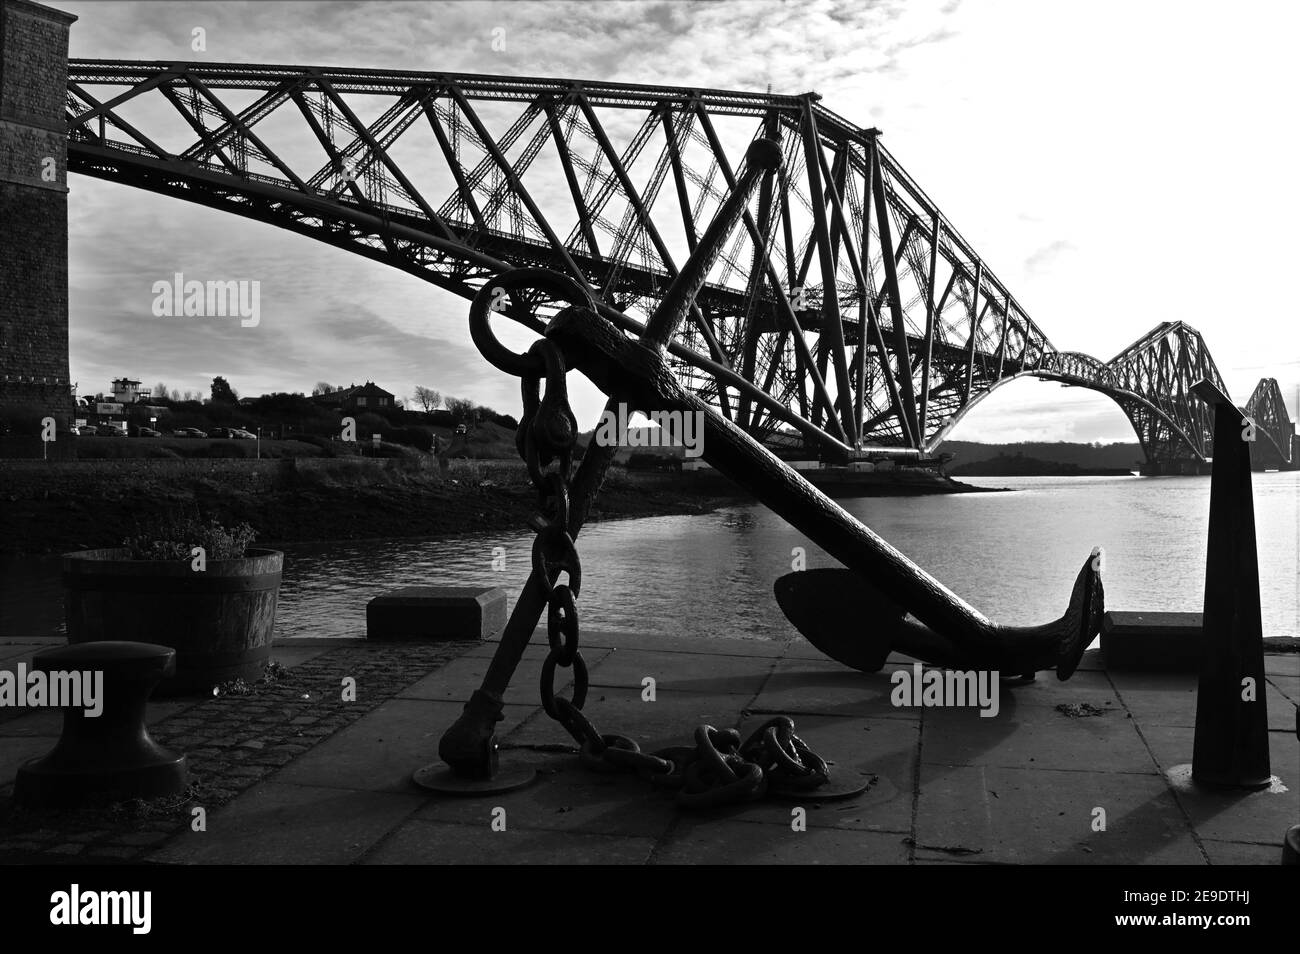 Ein Blick auf die historische und ikonische Forth-Eisenbahnbrücke, die die Forth Estuary in Schottland überspannt. Stockfoto